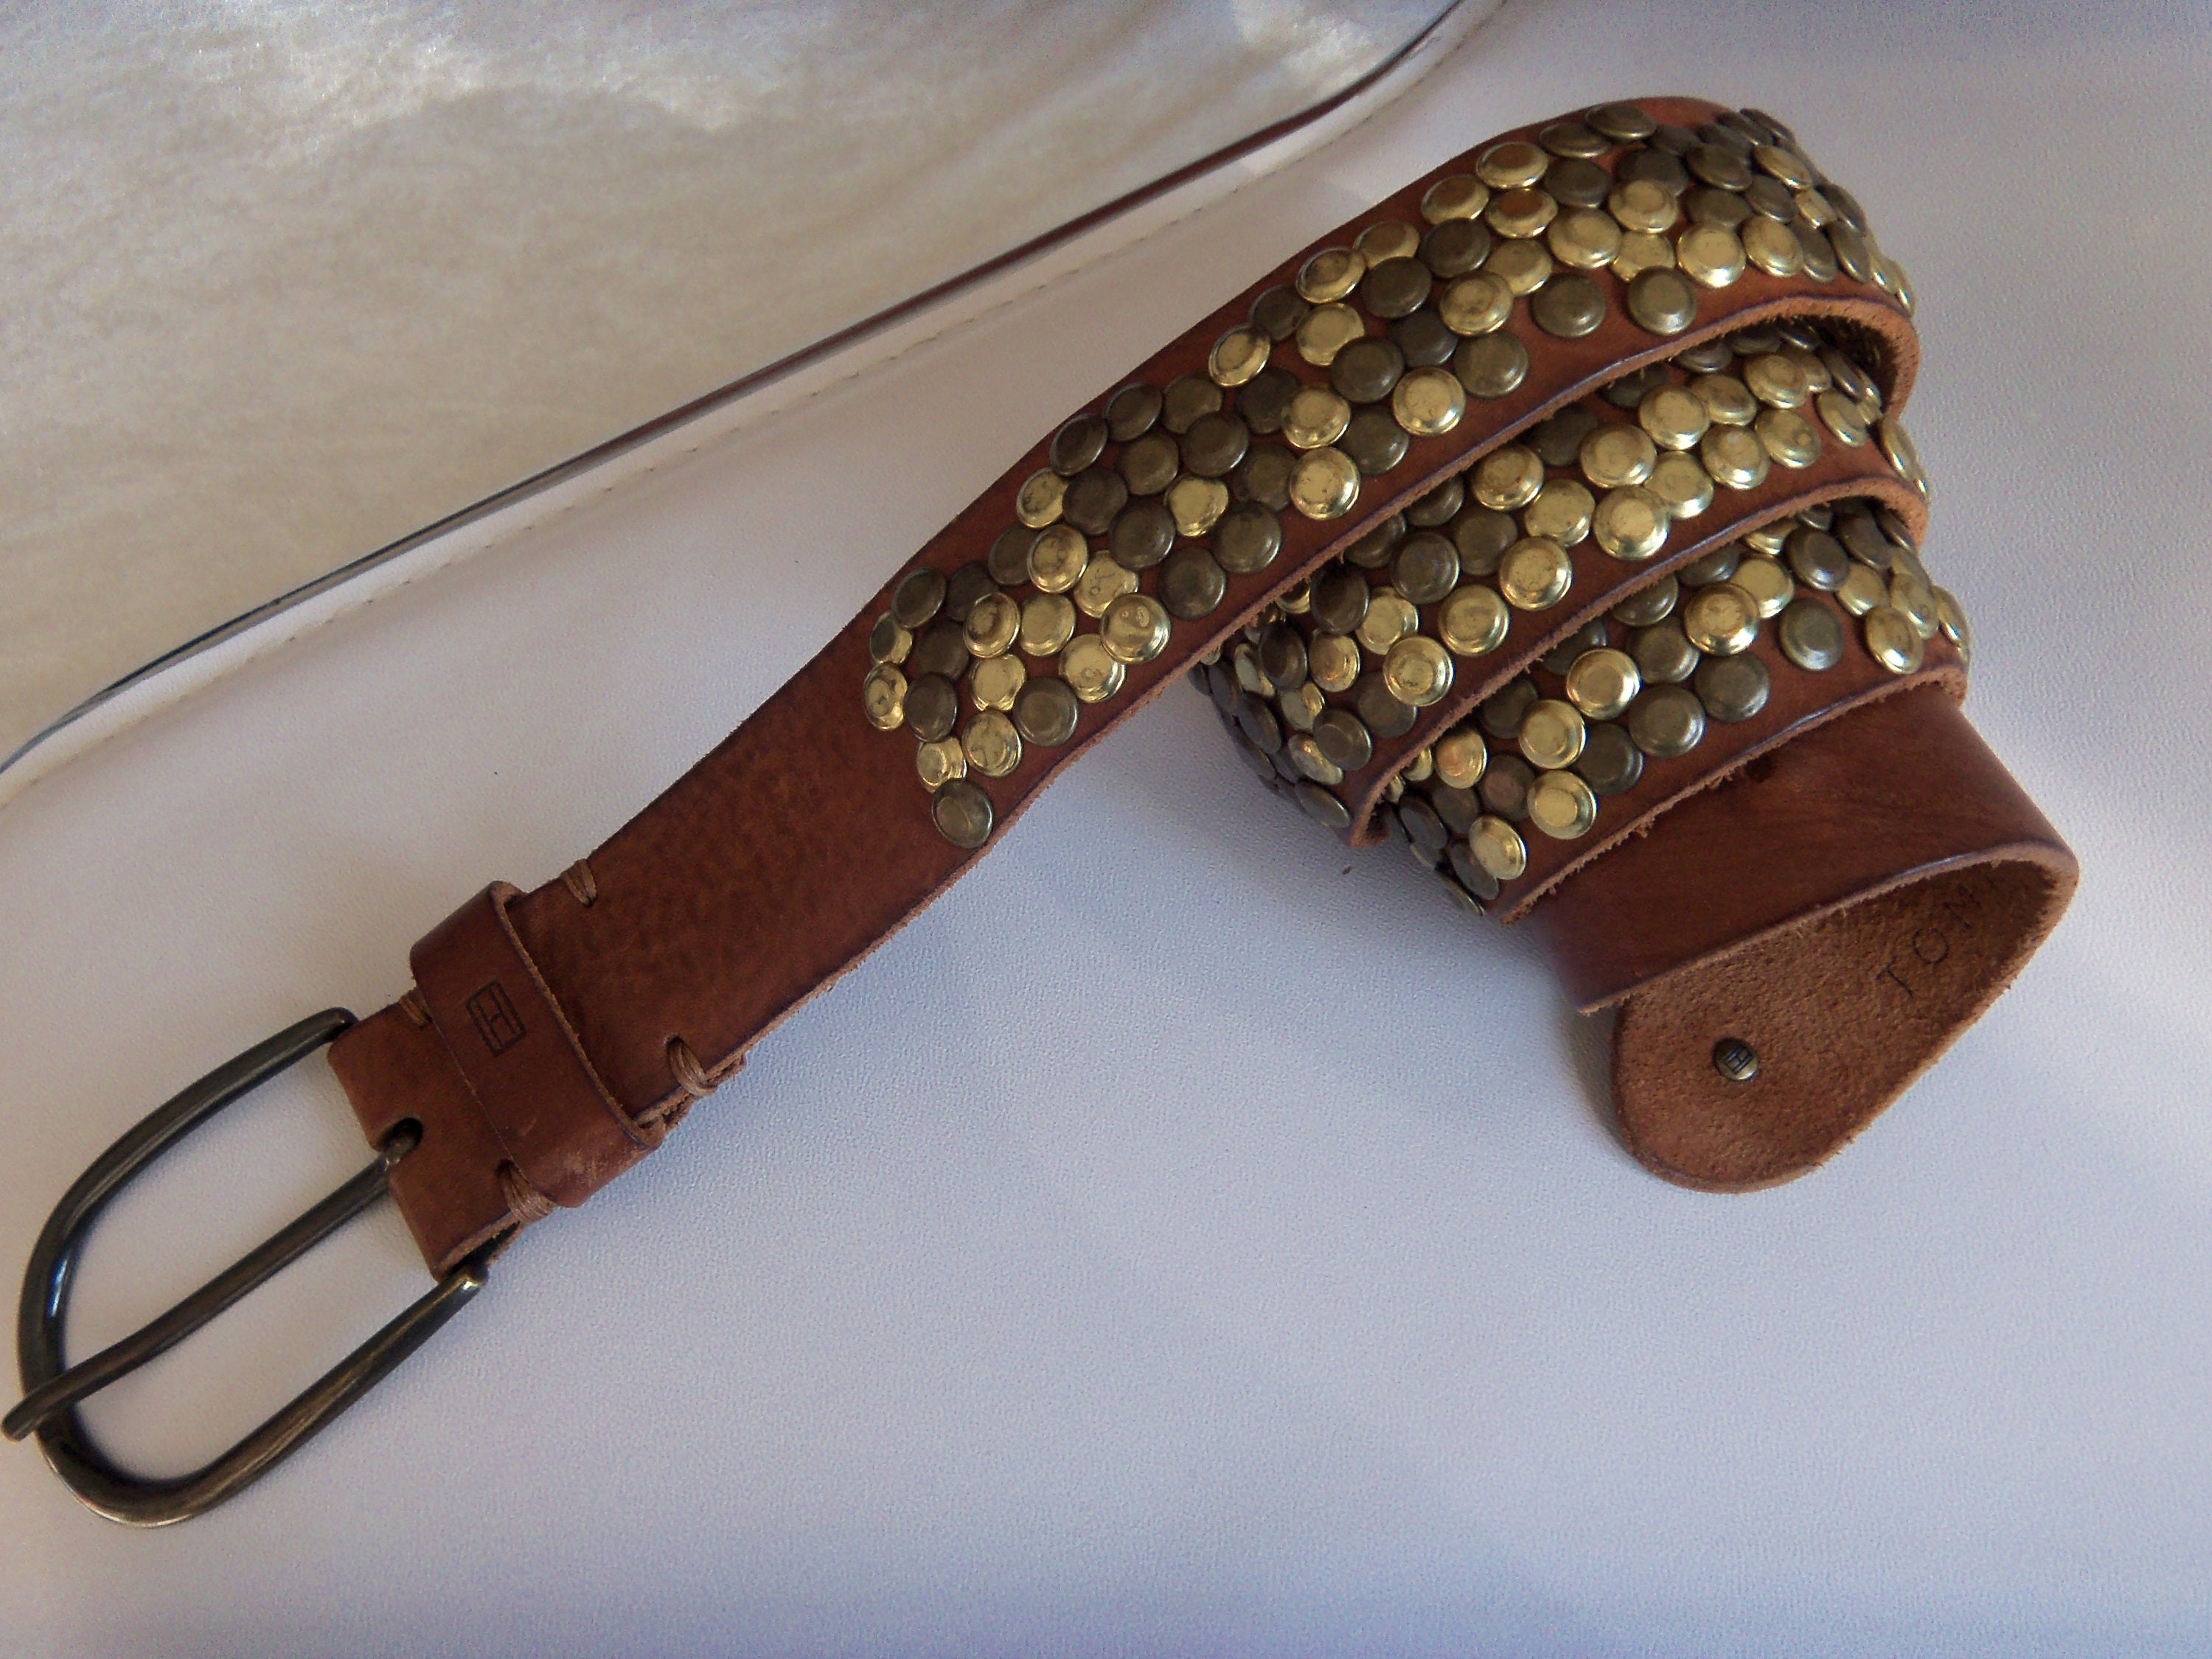 Hilfiger Studded Rivet Tan Leather Belt Cool -